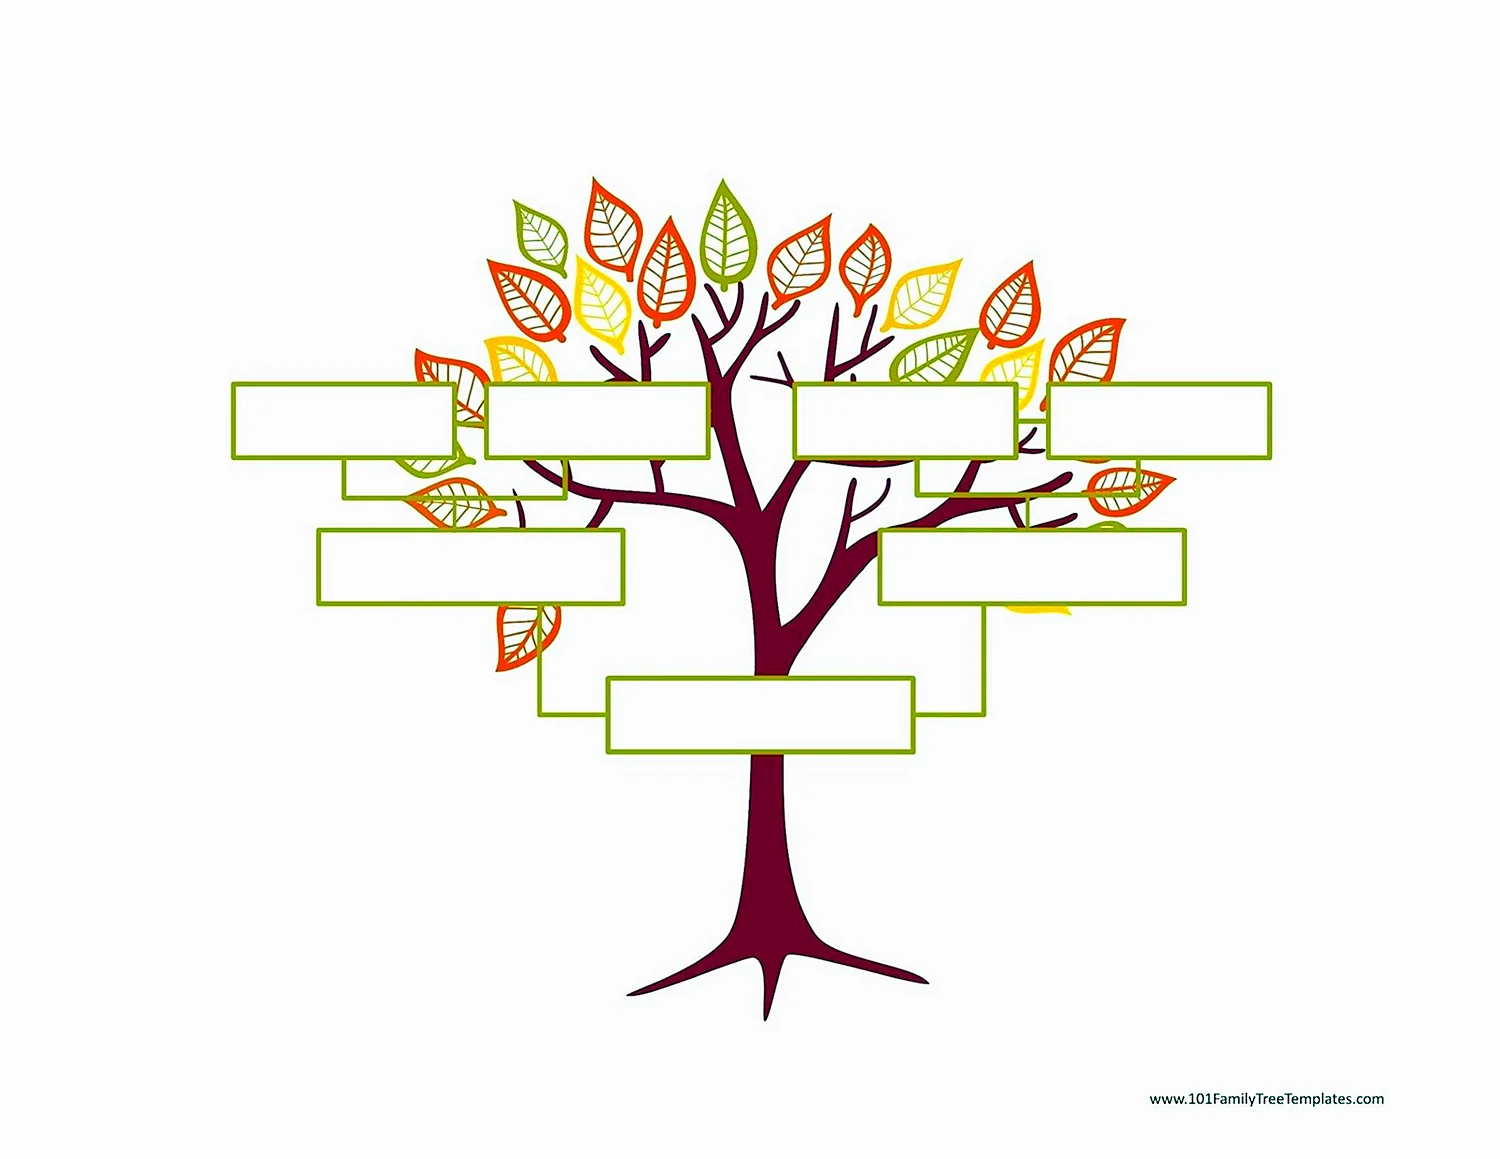 Родословная генетическая дерево